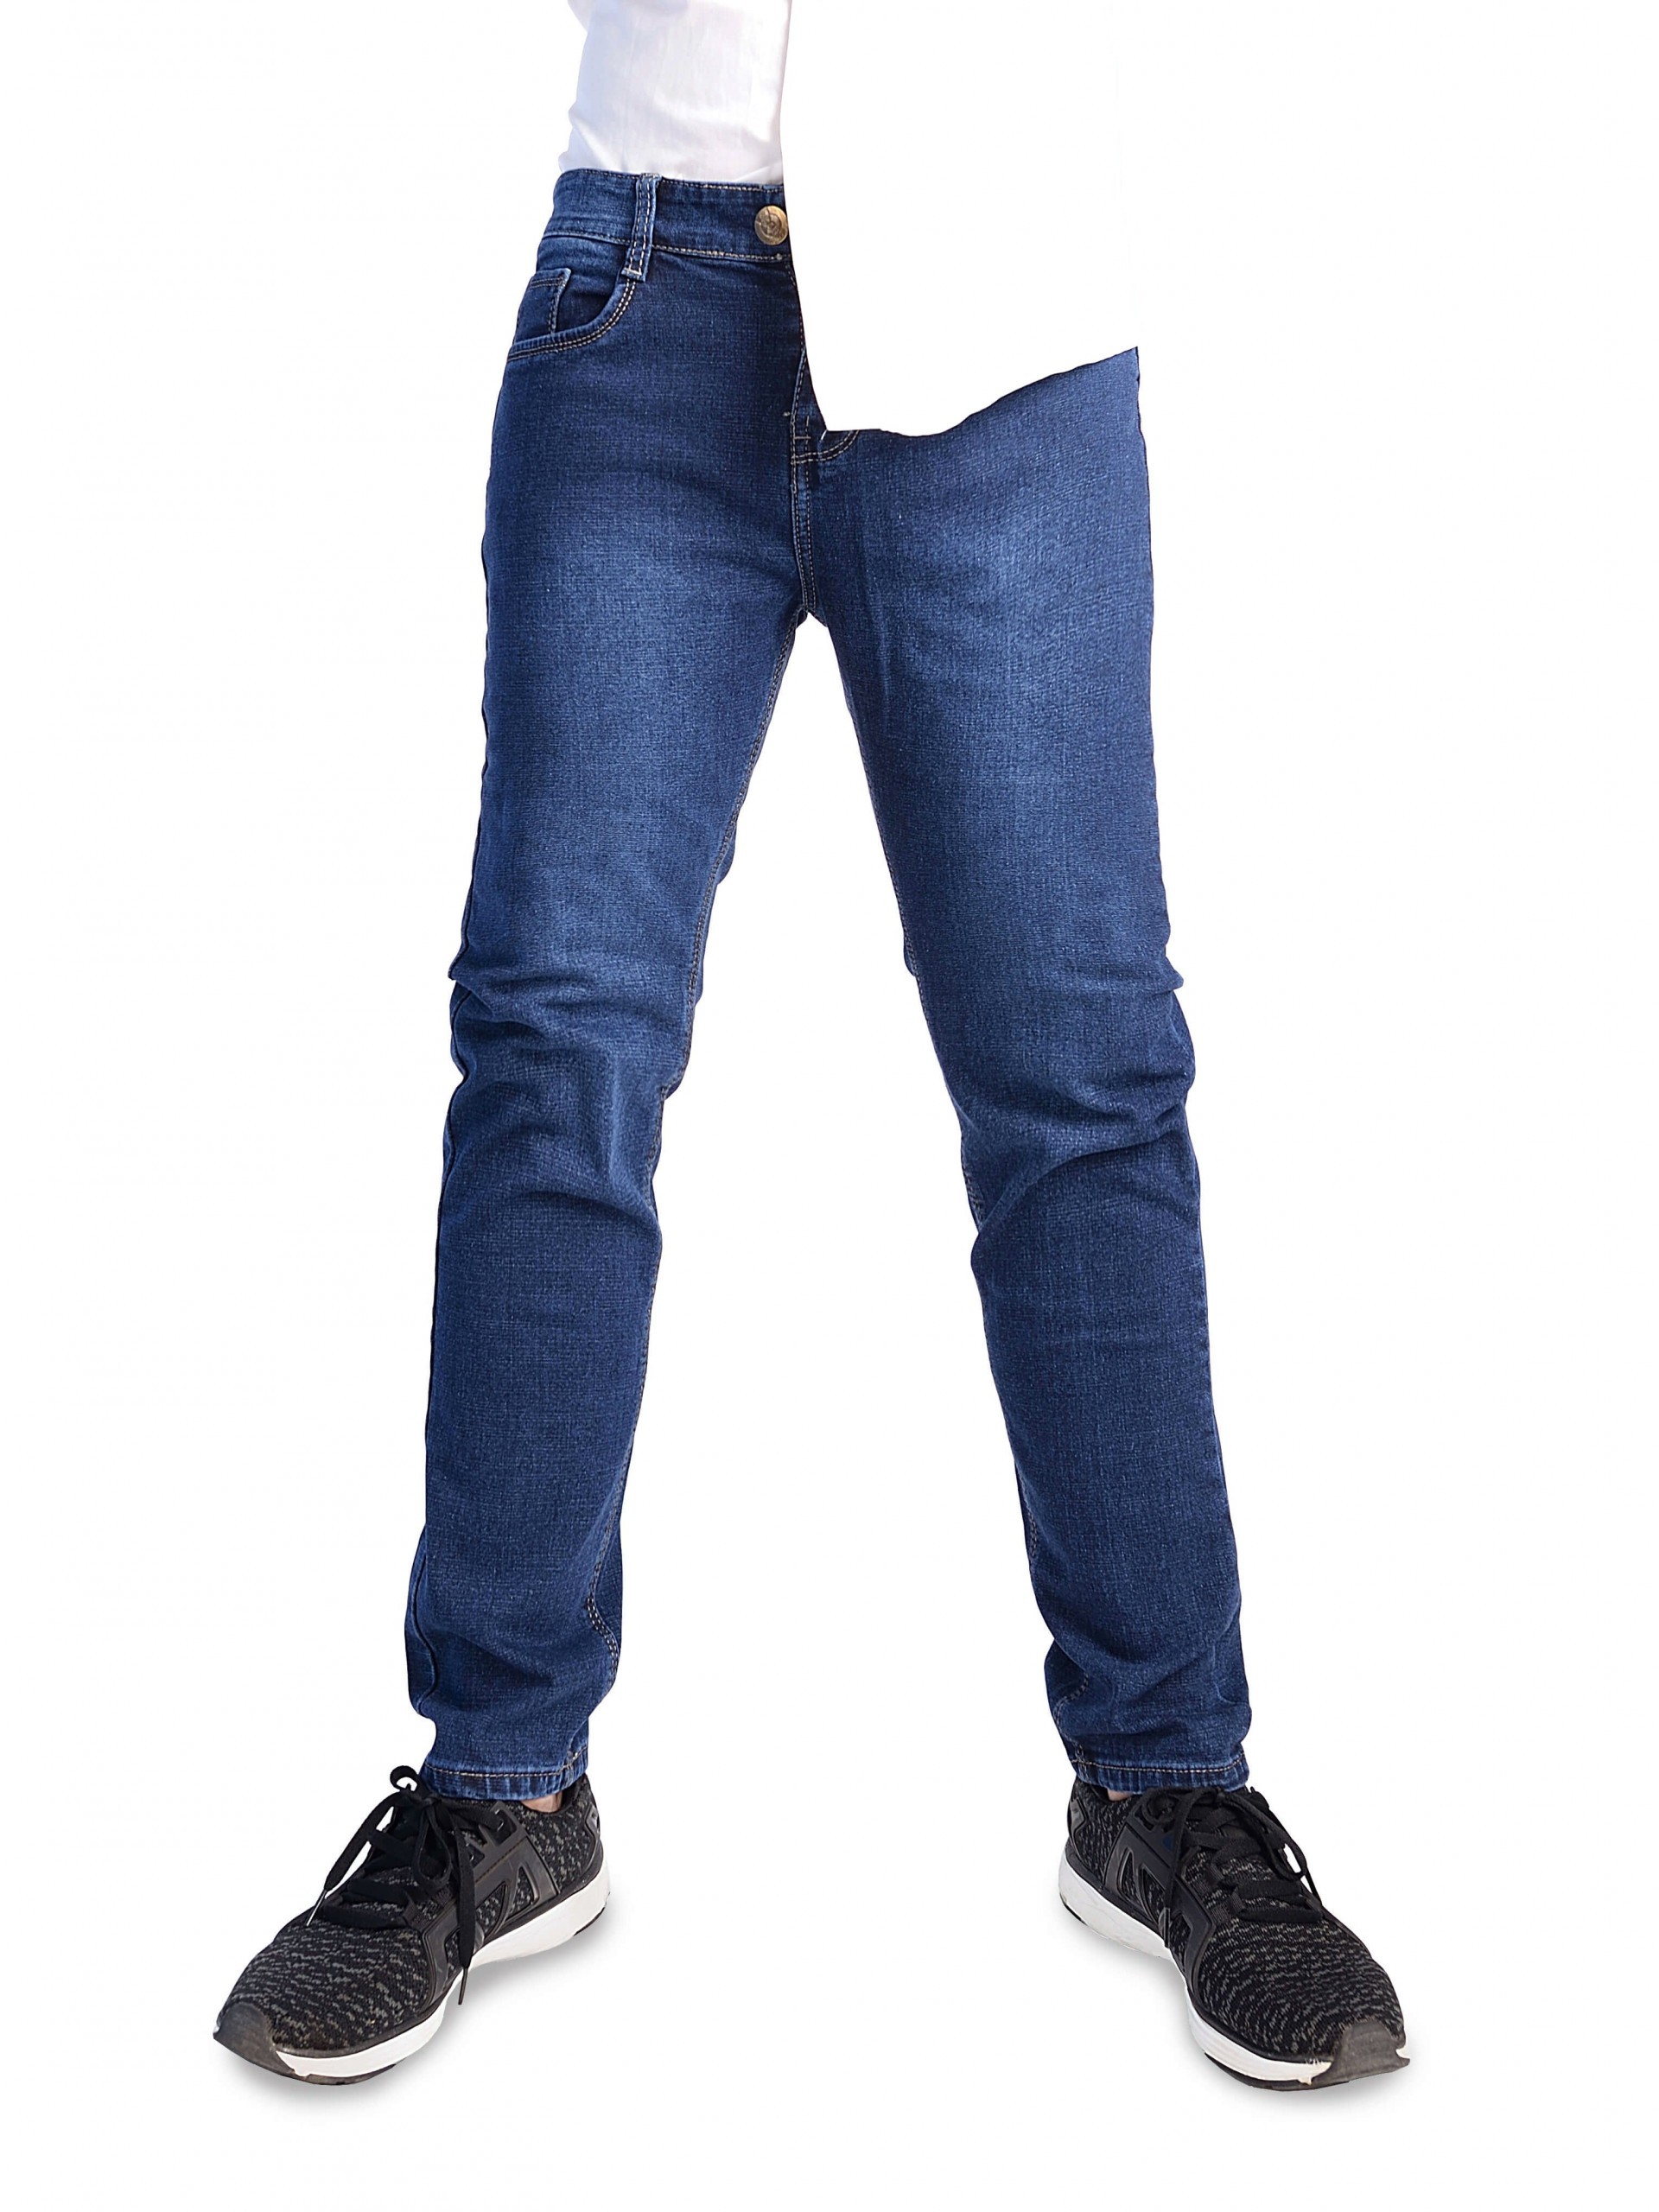 Bắt trend với cách phối đồ cùng jeans nam body cực chuẩn